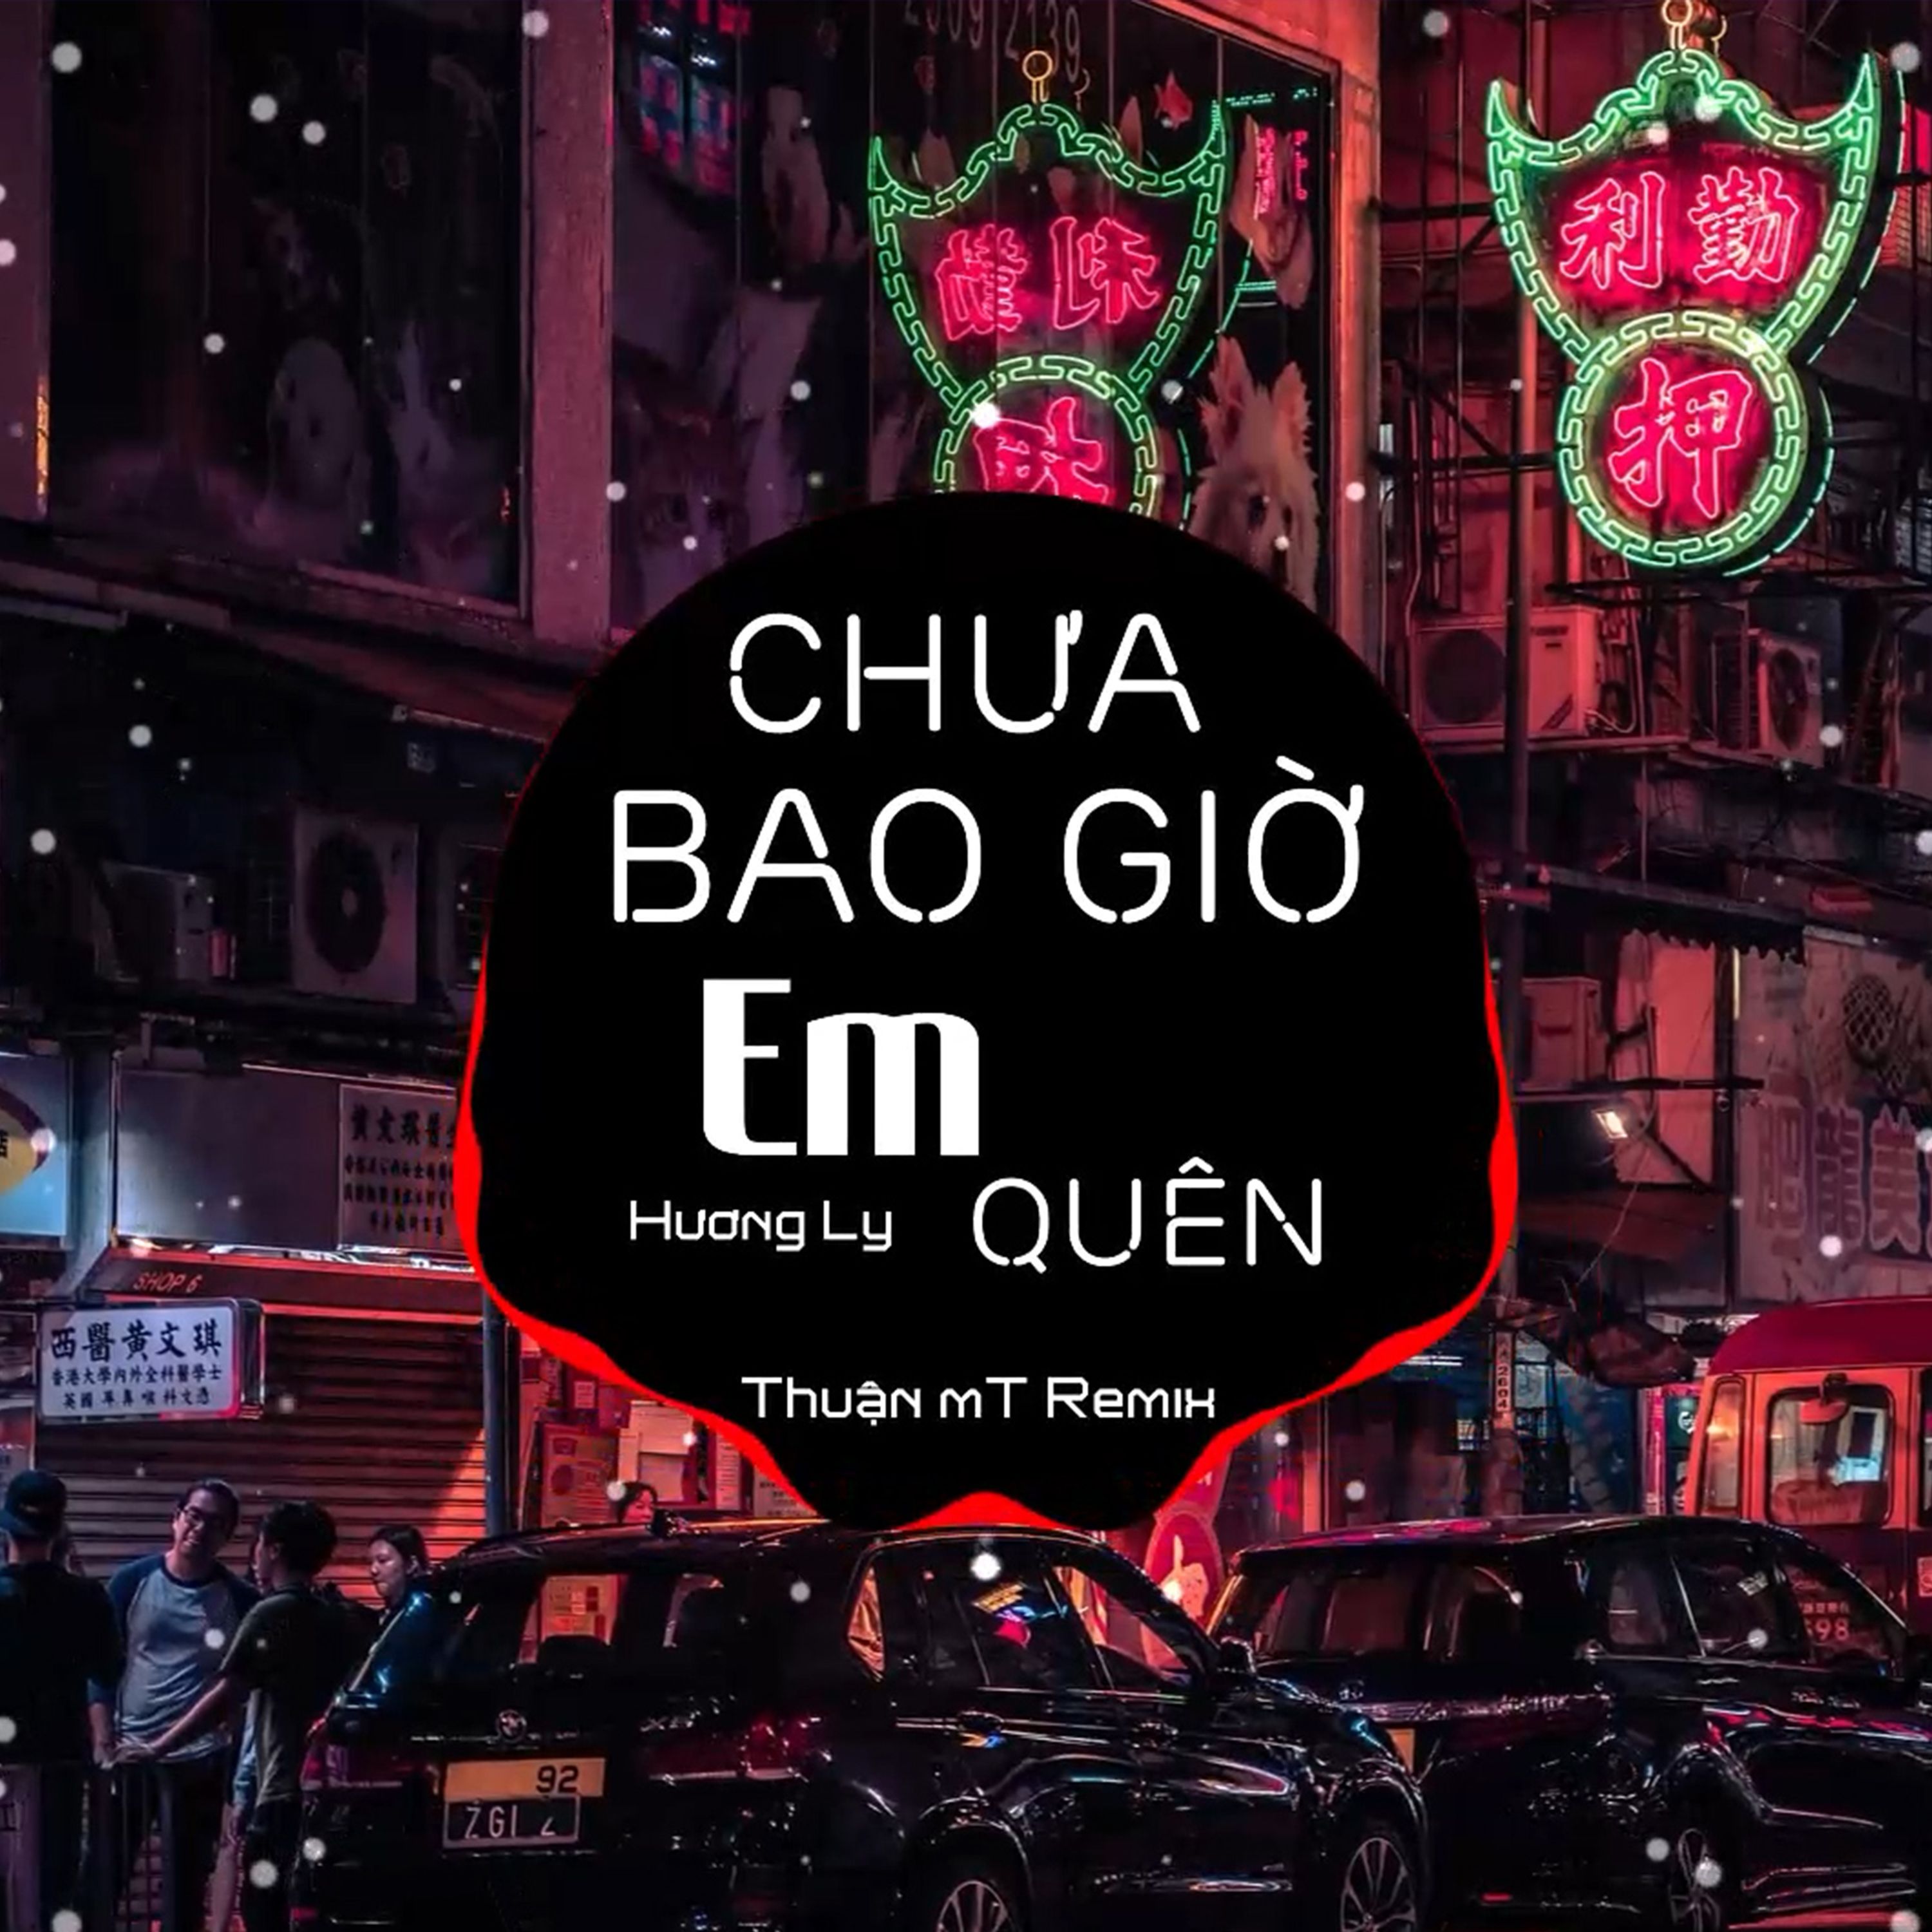 Budata Chưa Bao Giờ Em Quên ( Thuận mT Remix ) Ver 2 - Hương Ly | Nhạc Nền Chill Phiêu Nhất TikTok  2021